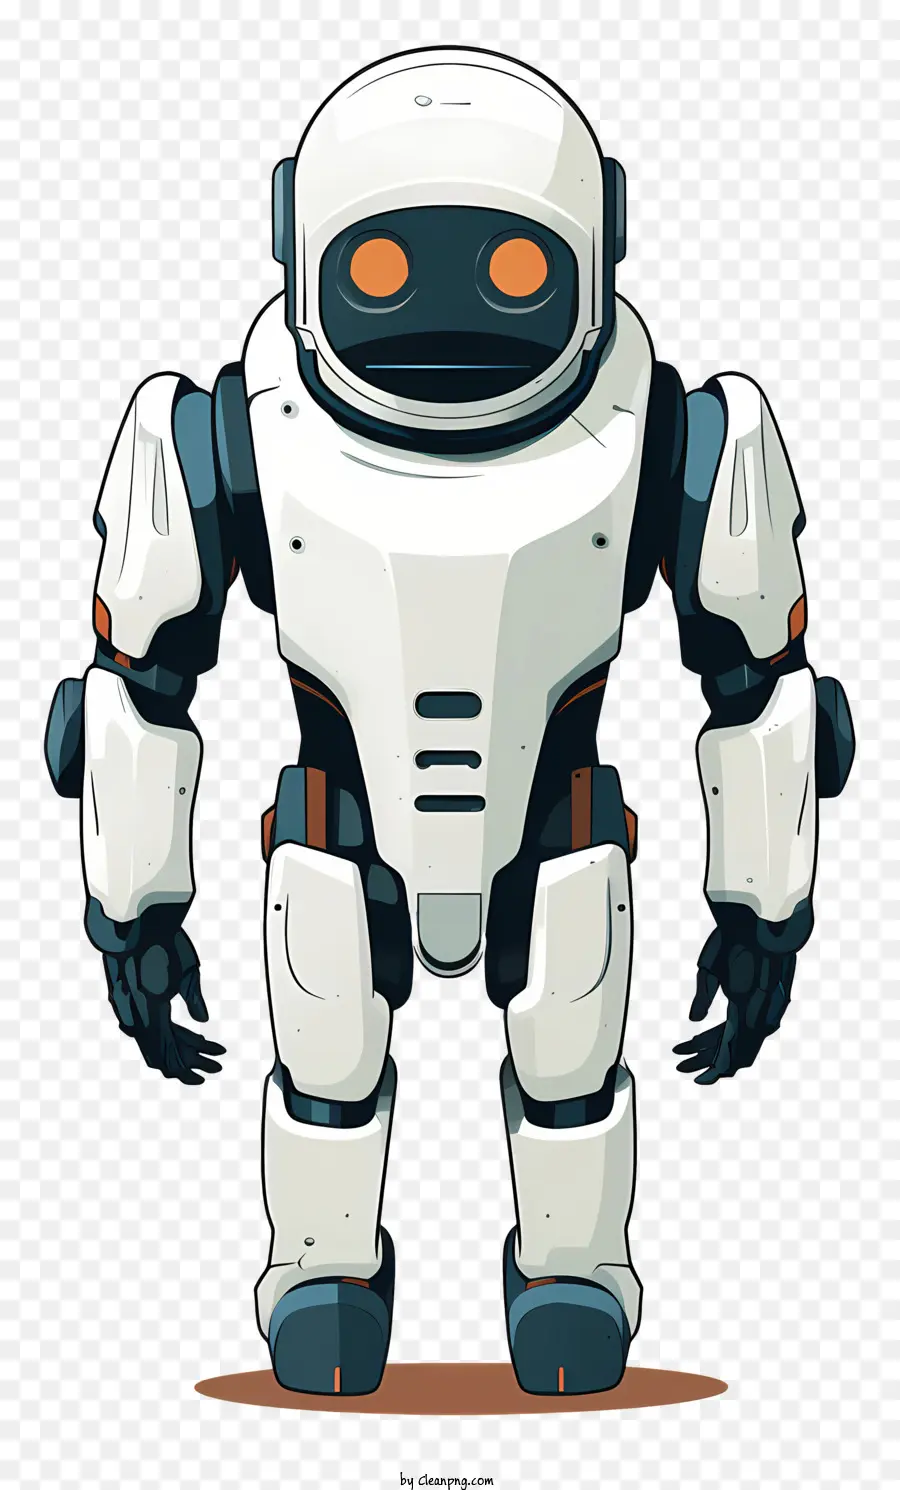 Robot White Suit Glowing Eyes Boots Belt - Robot có màu trắng phù hợp, đầu tròn với đôi mắt màu cam